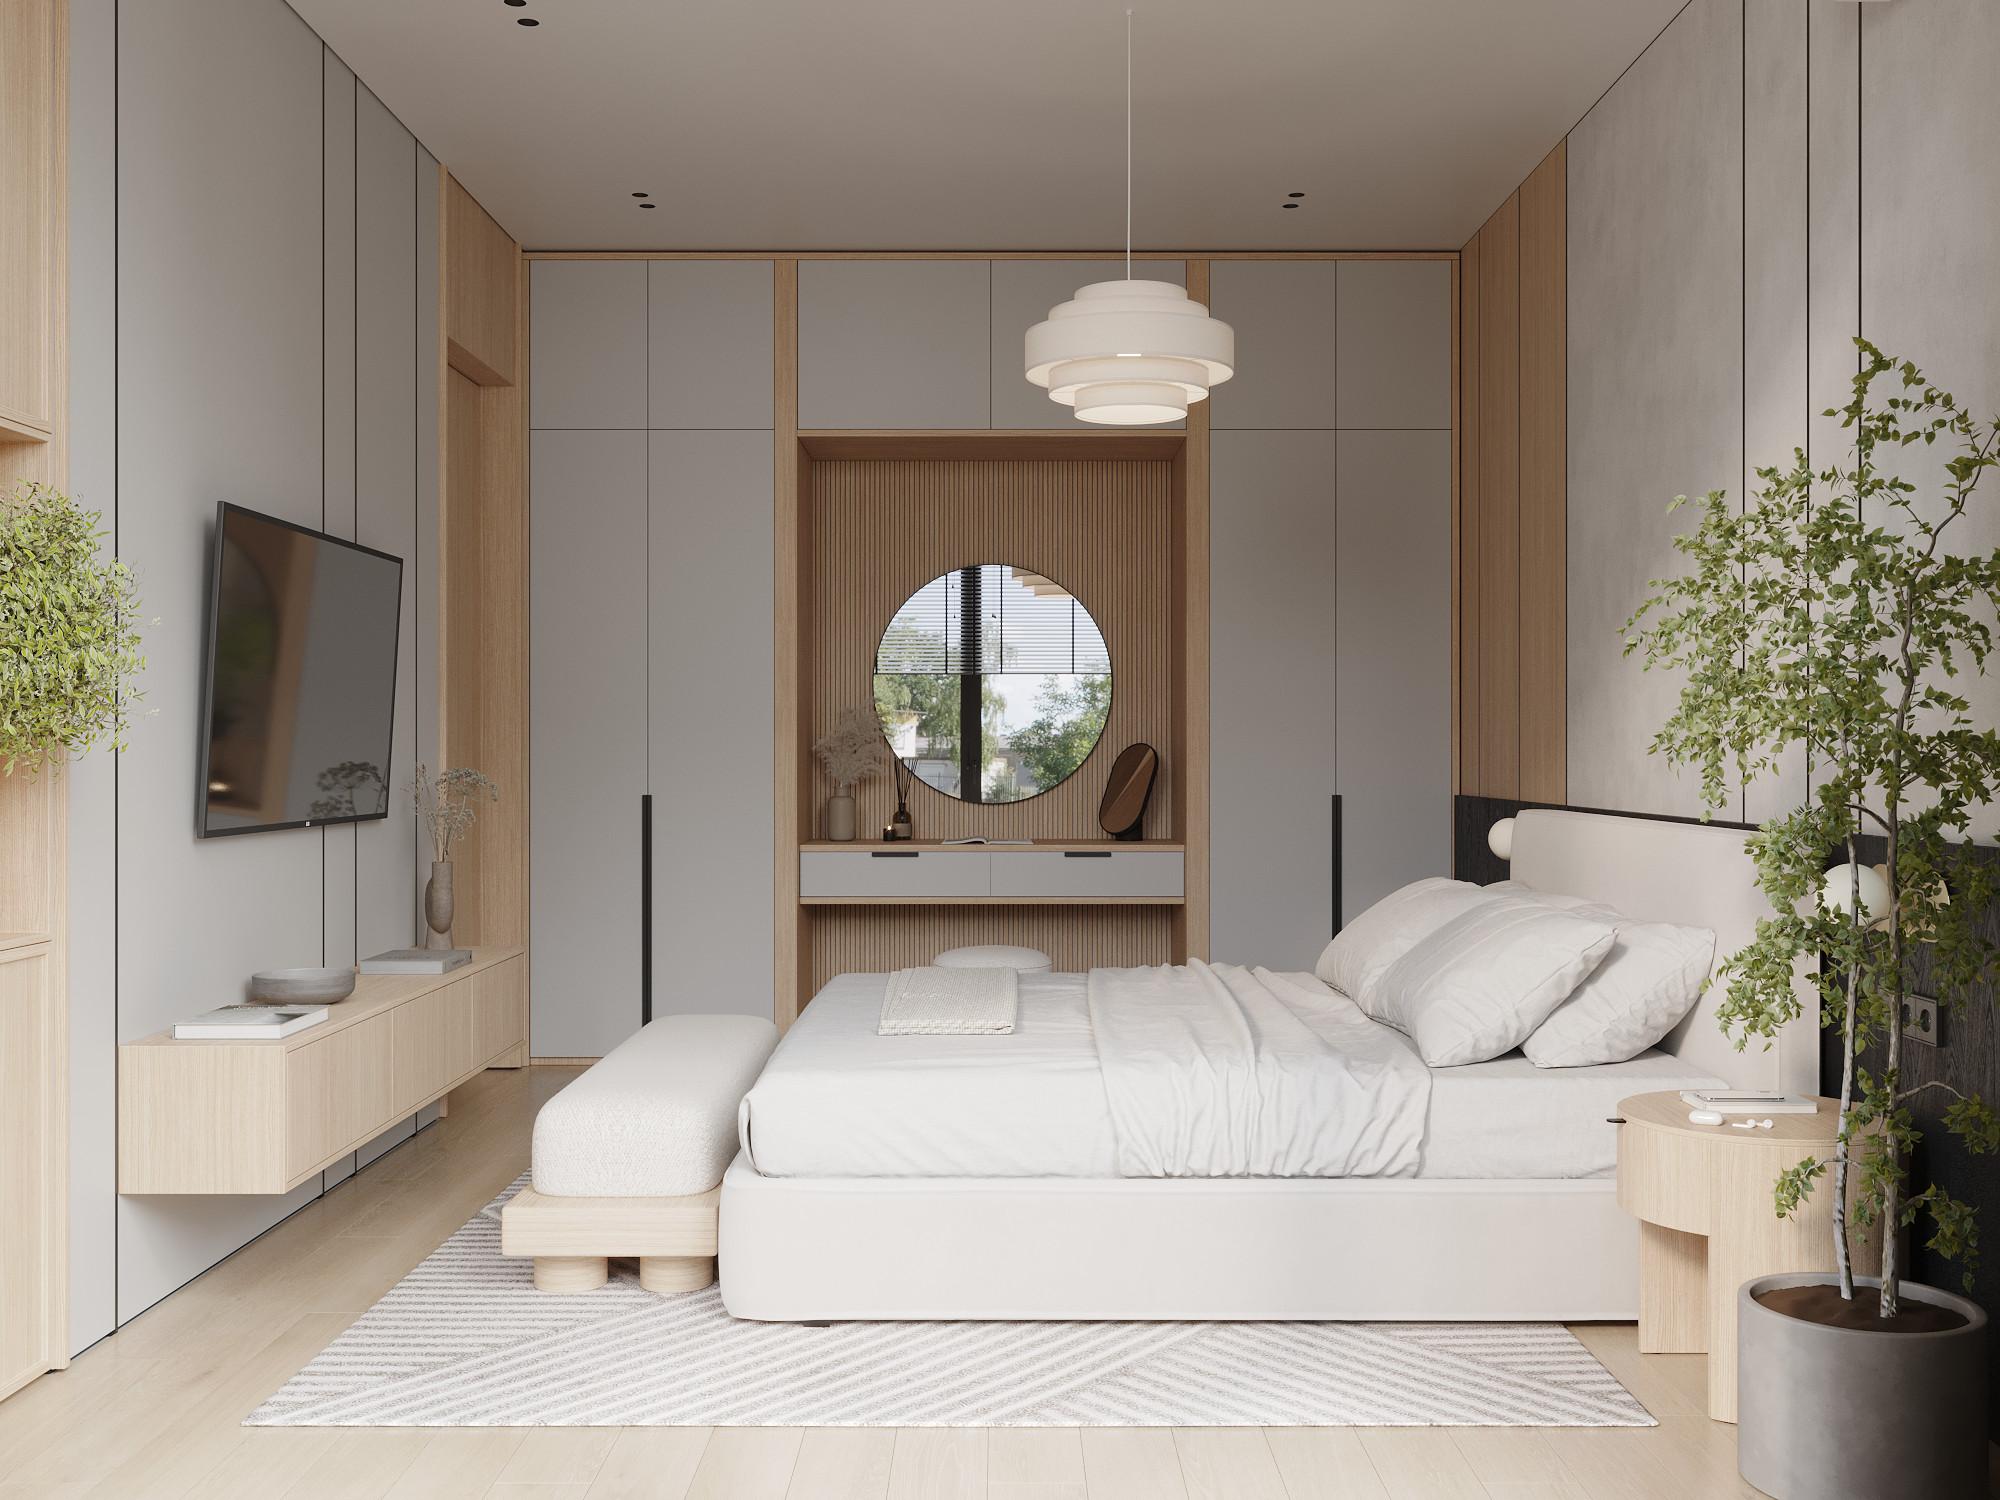 Интерьер спальни cветильниками над кроватью в современном стиле, в стиле лофт, японском и эко